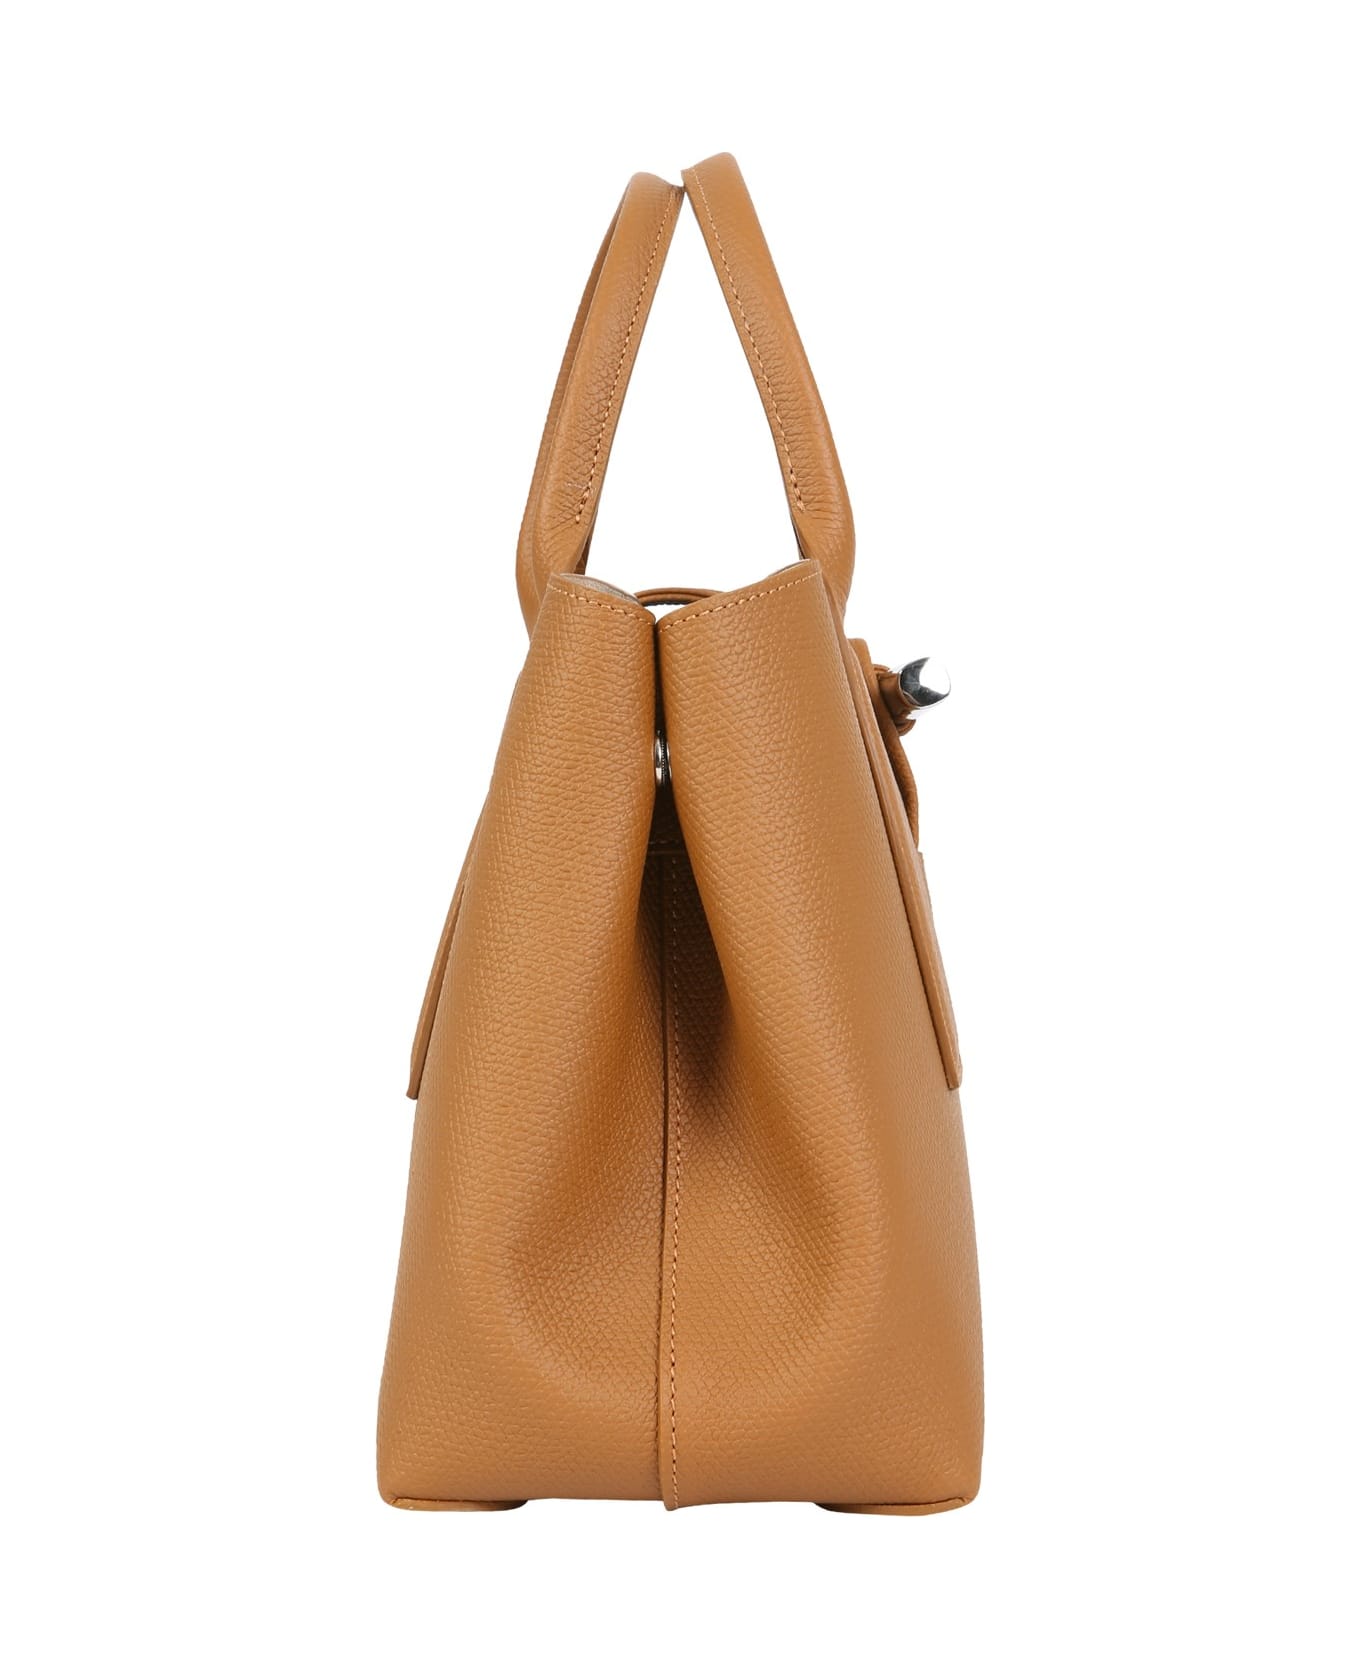 Longchamp Medium Roseau Bag - BROWN